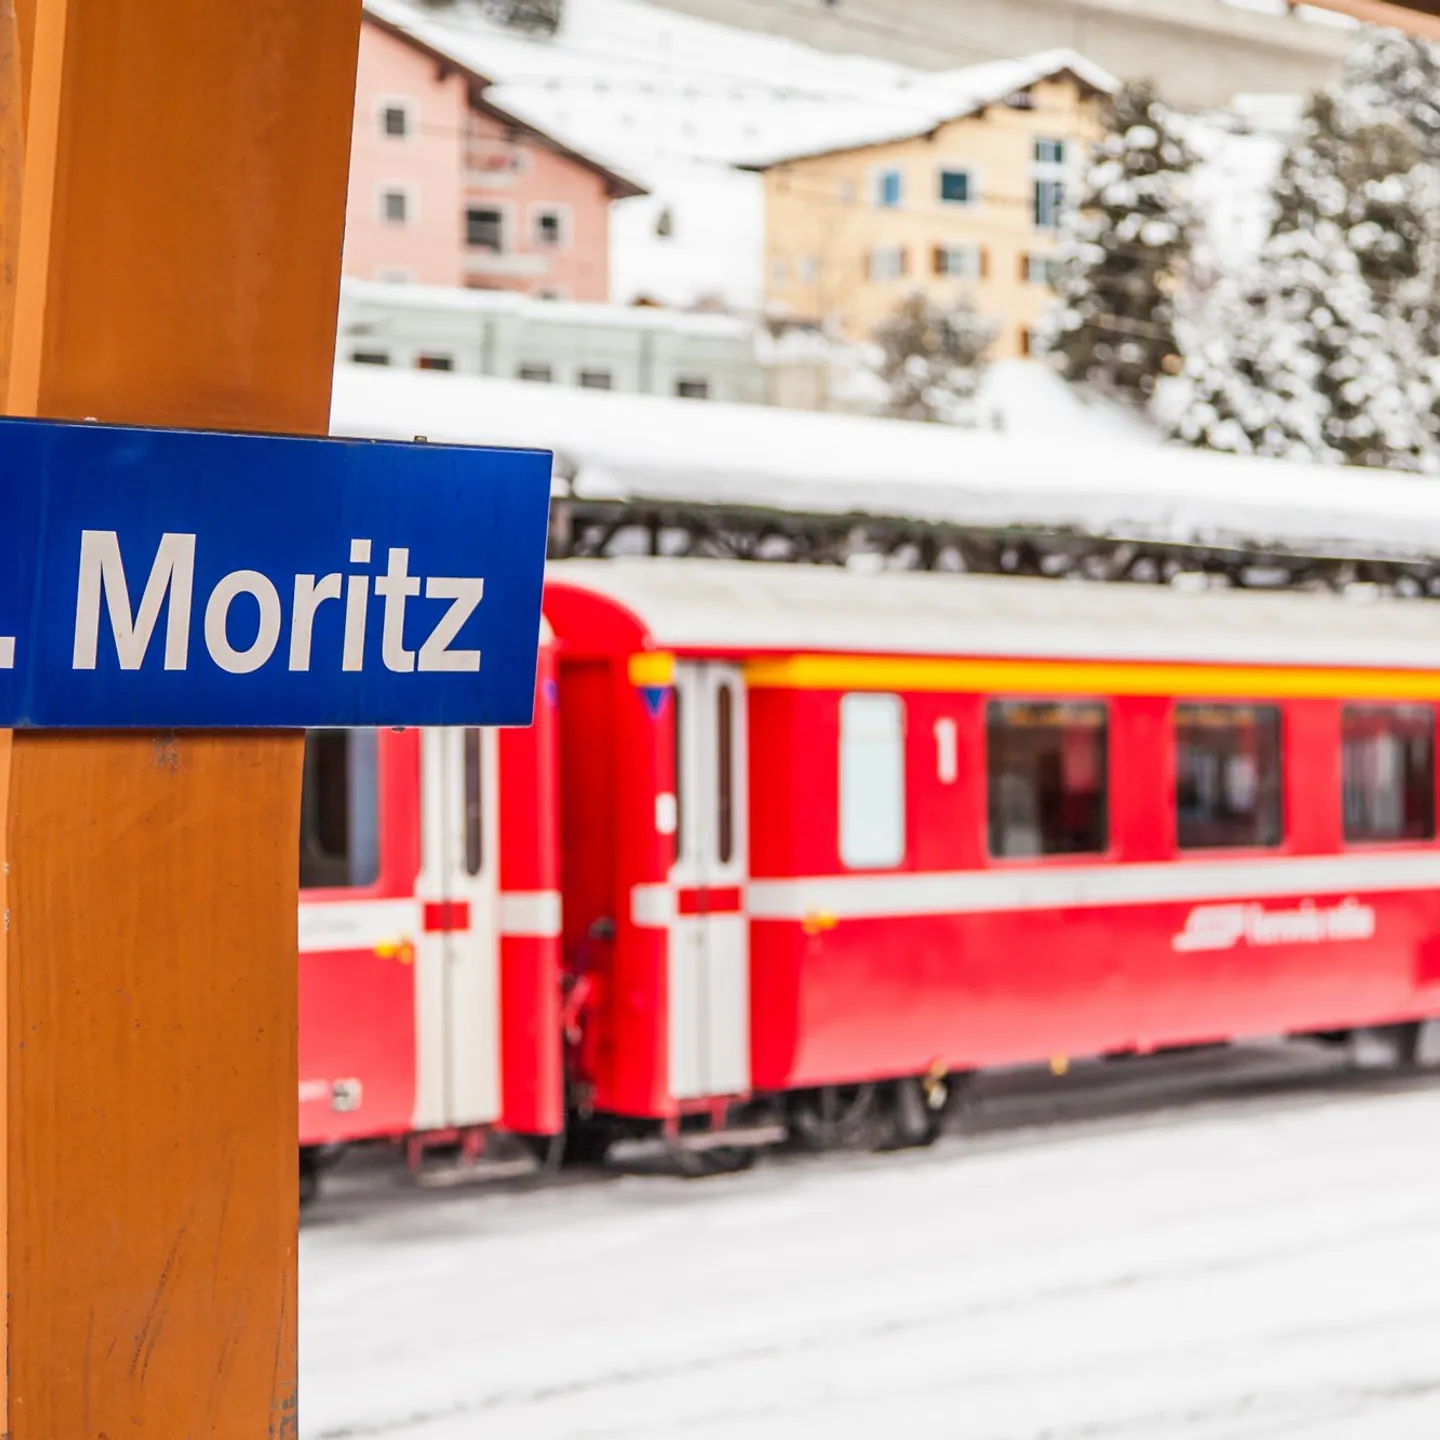 Station St. Moritz